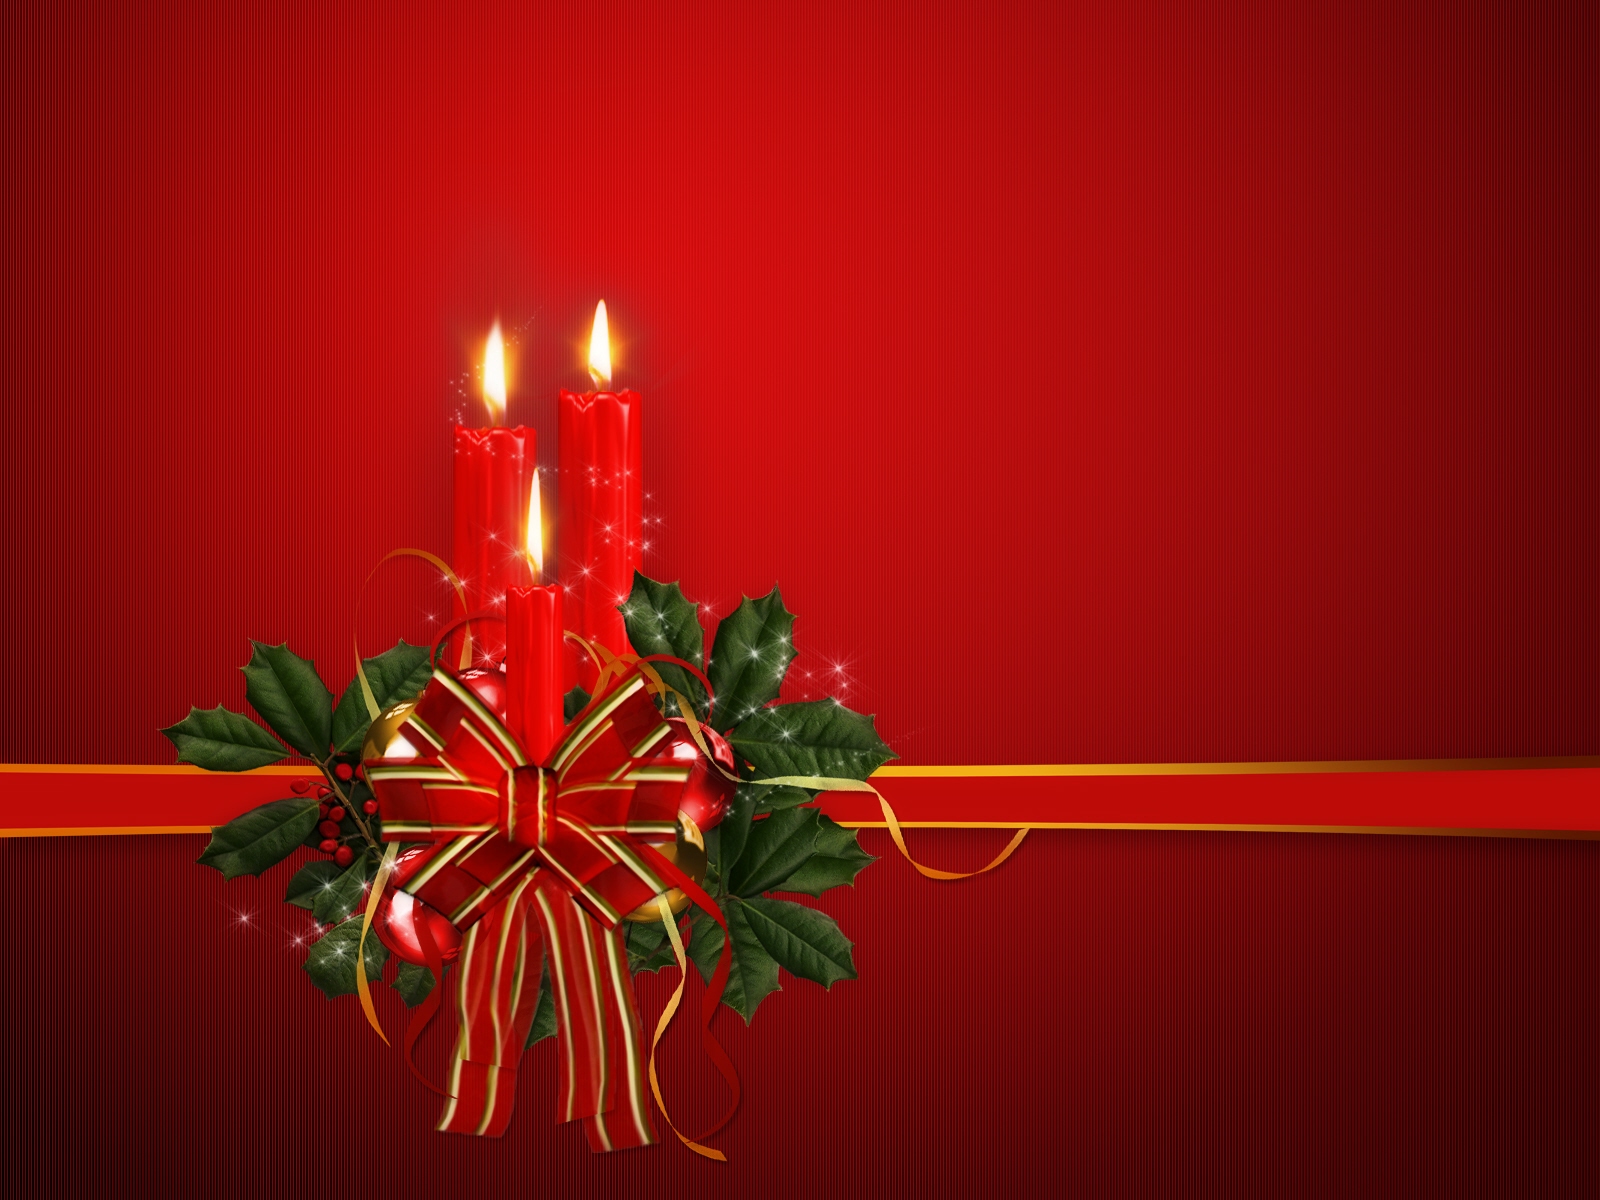 sfondo del computer portatile di natale,rosso,illuminazione,decorazione natalizia,natale,luci di natale